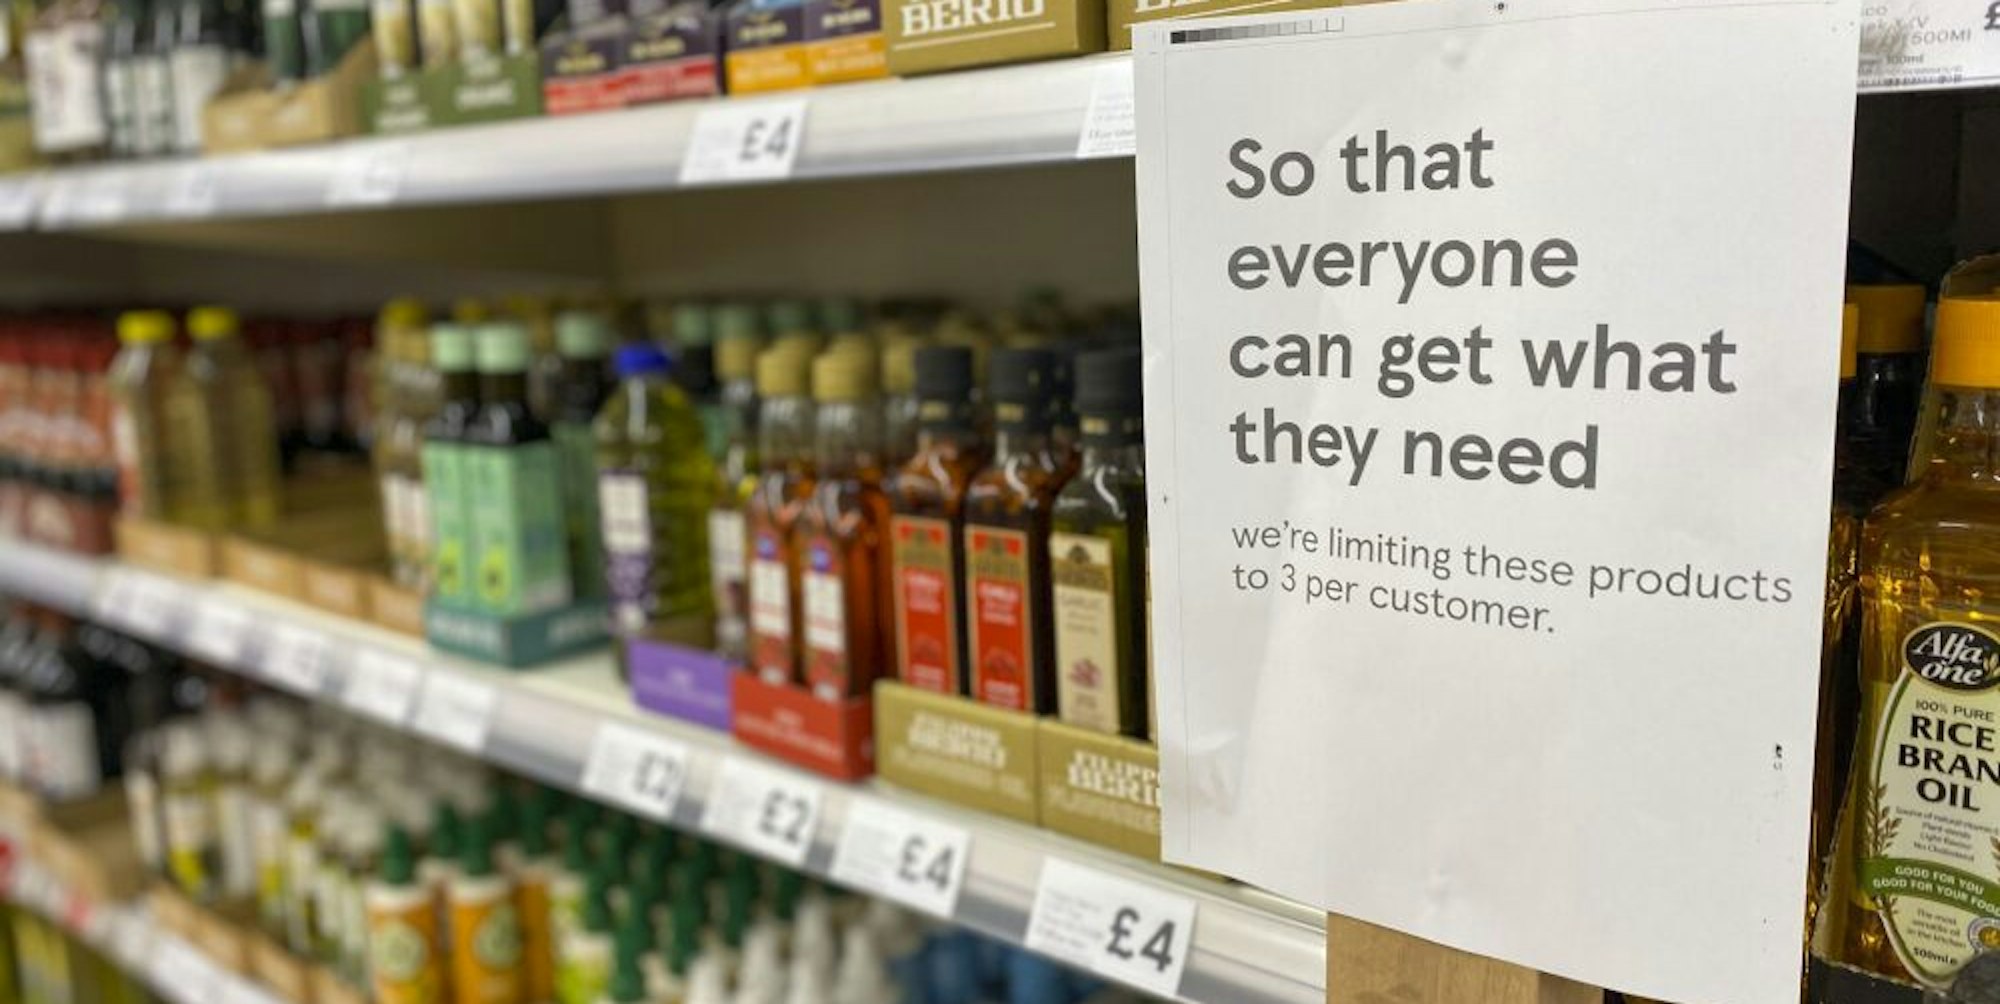 Ein britischer Supermarkt weist seine Kunden darauf hin, dass jeder maximal drei Flaschen kaufen darf.